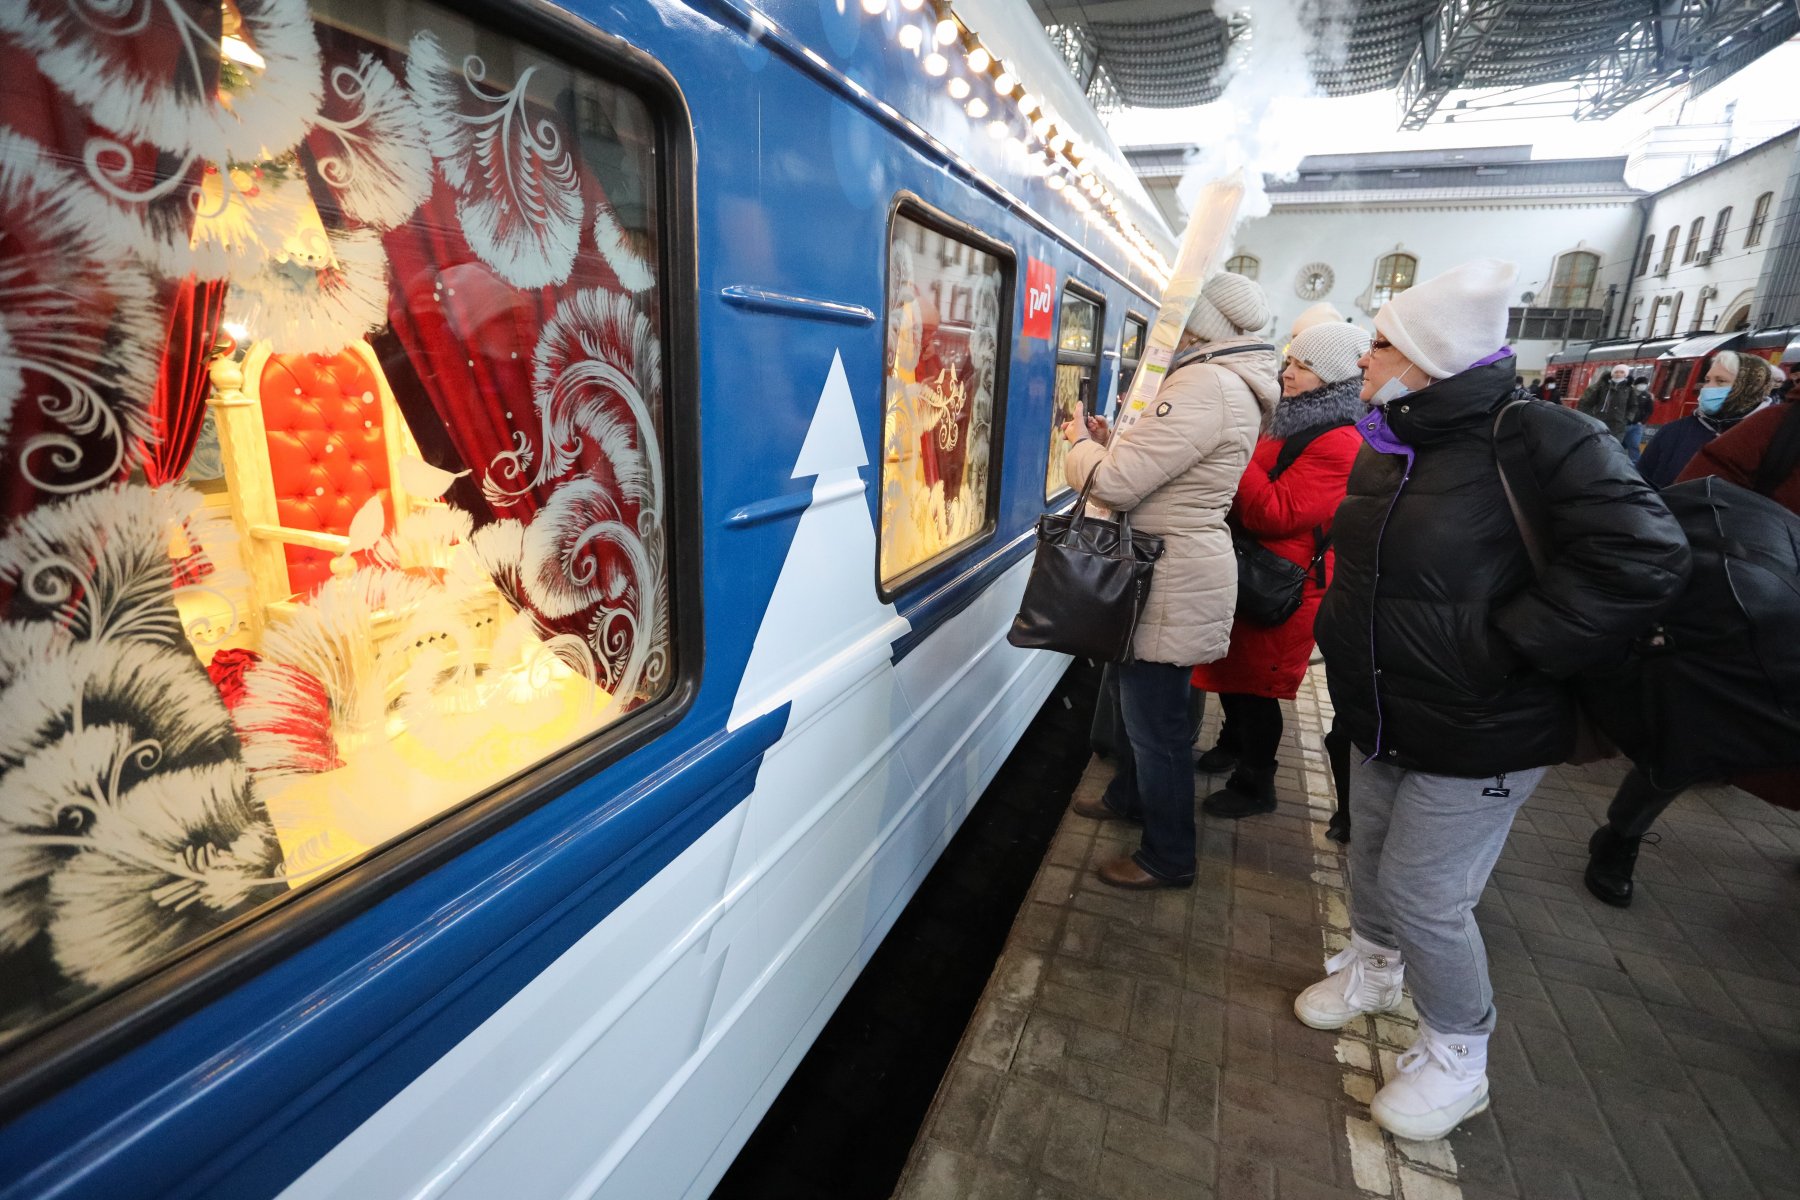 Сказочные персонажи, угощения и гирлянды. Какие ещё сюрпризы ждут пассажиров новогодних поездов?